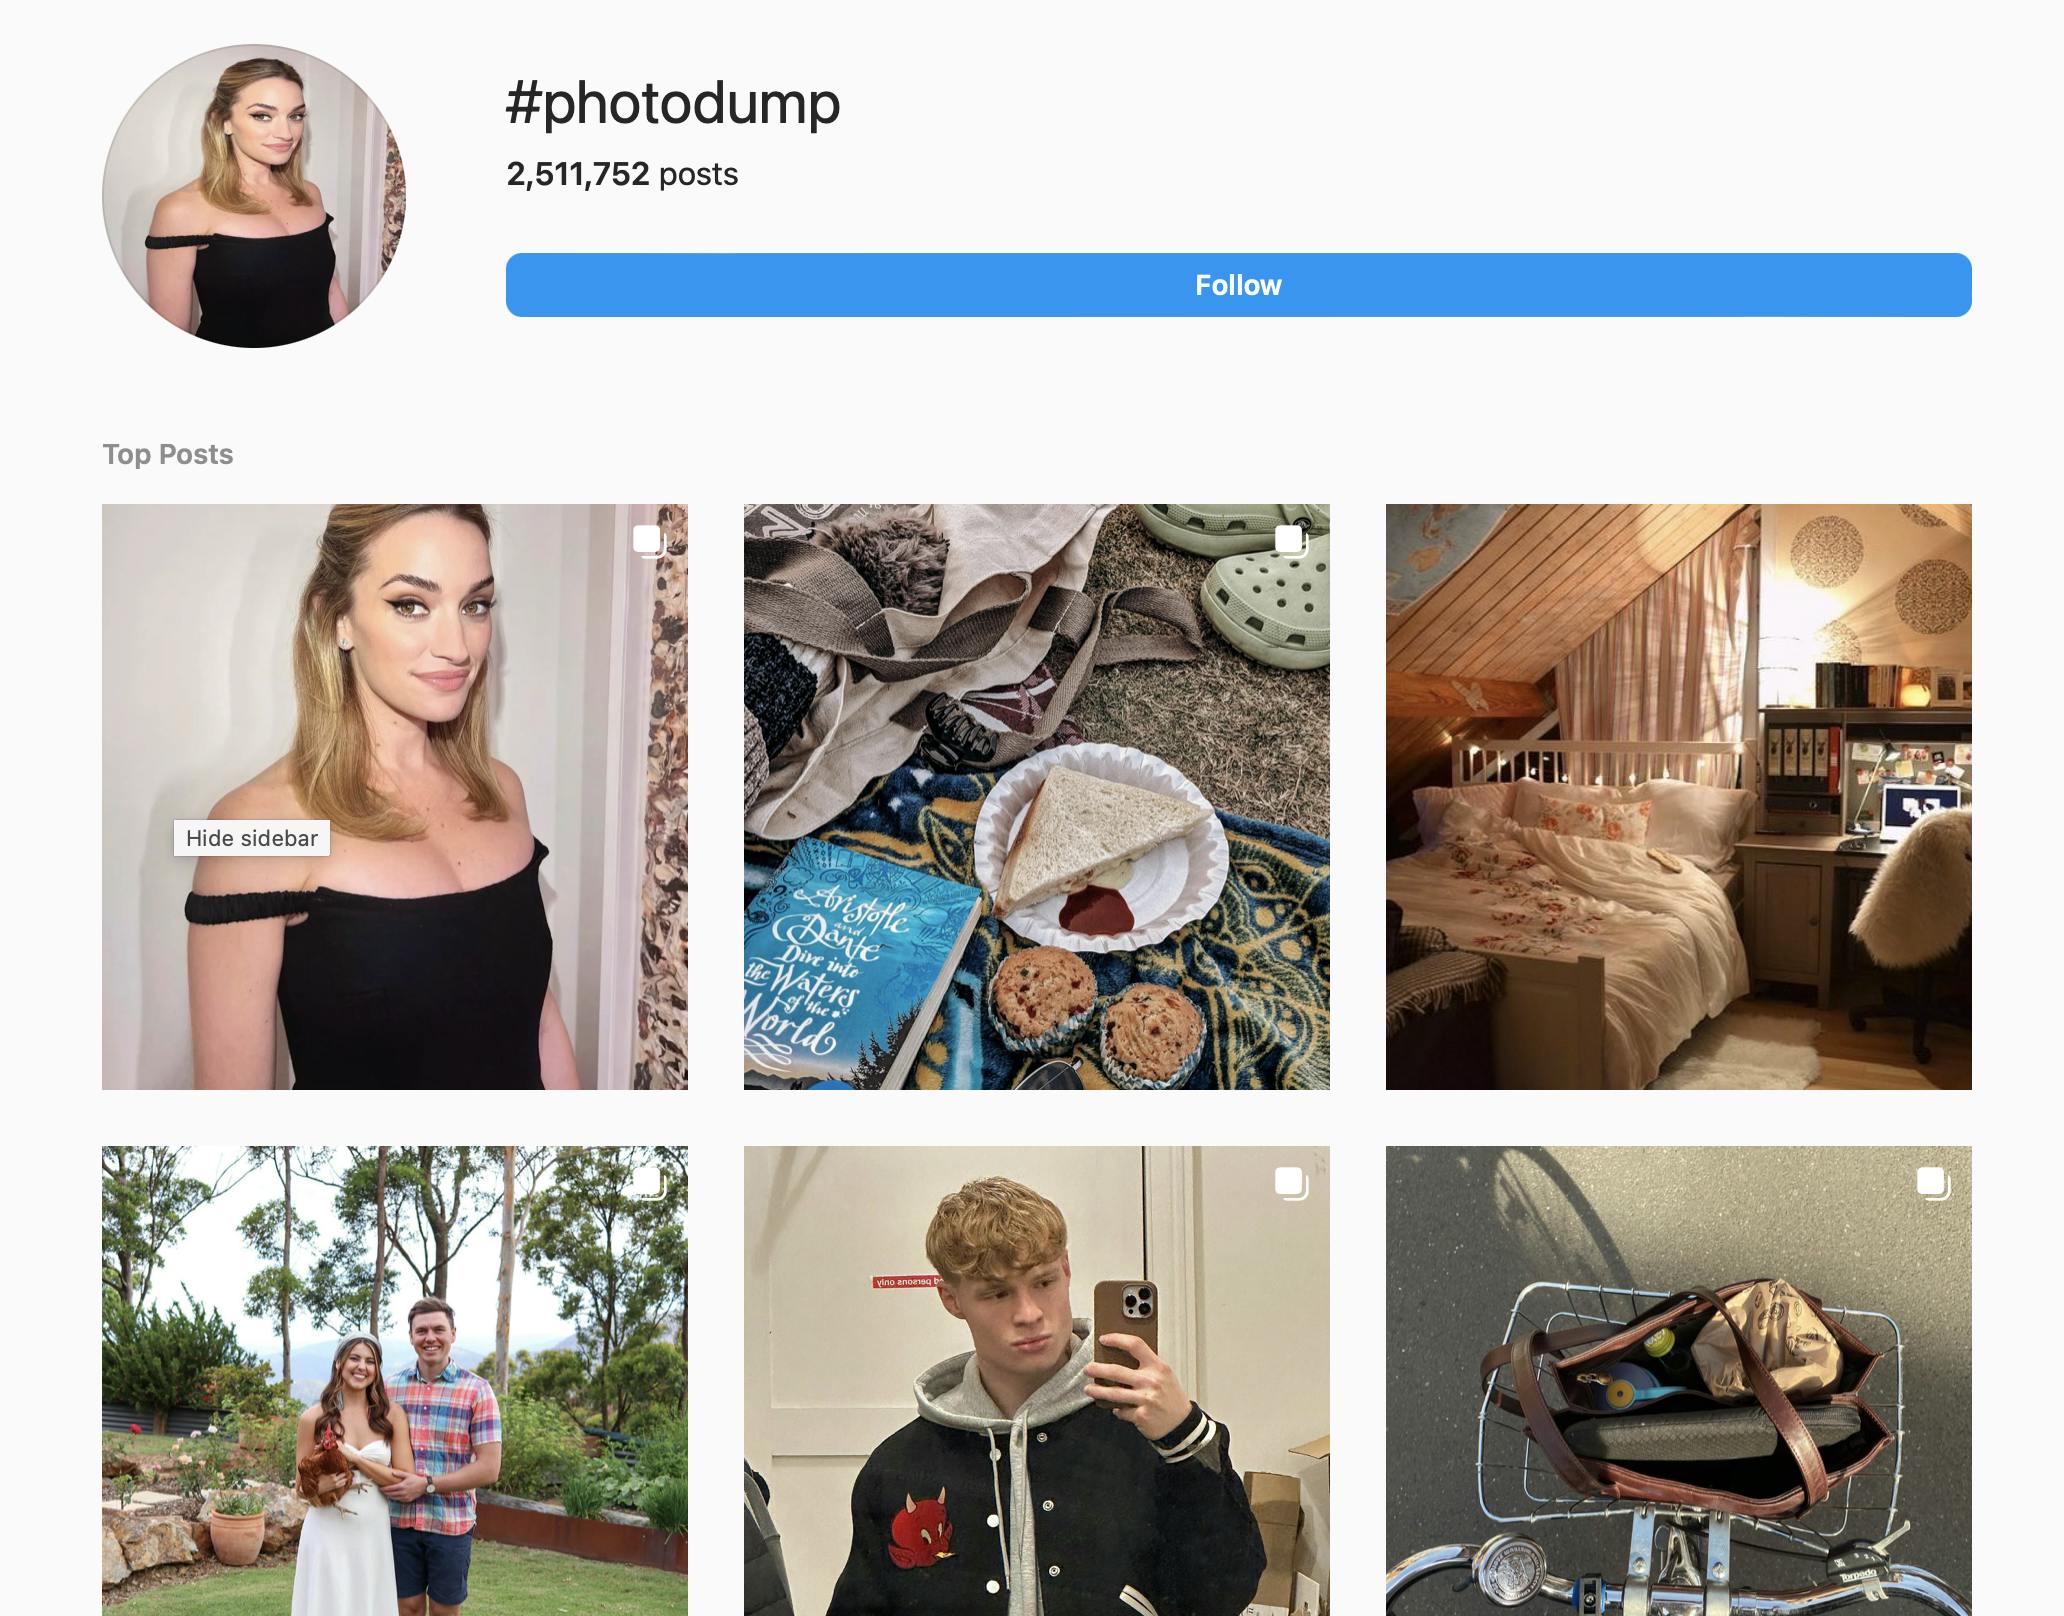 Instagram photo dump hashtag 